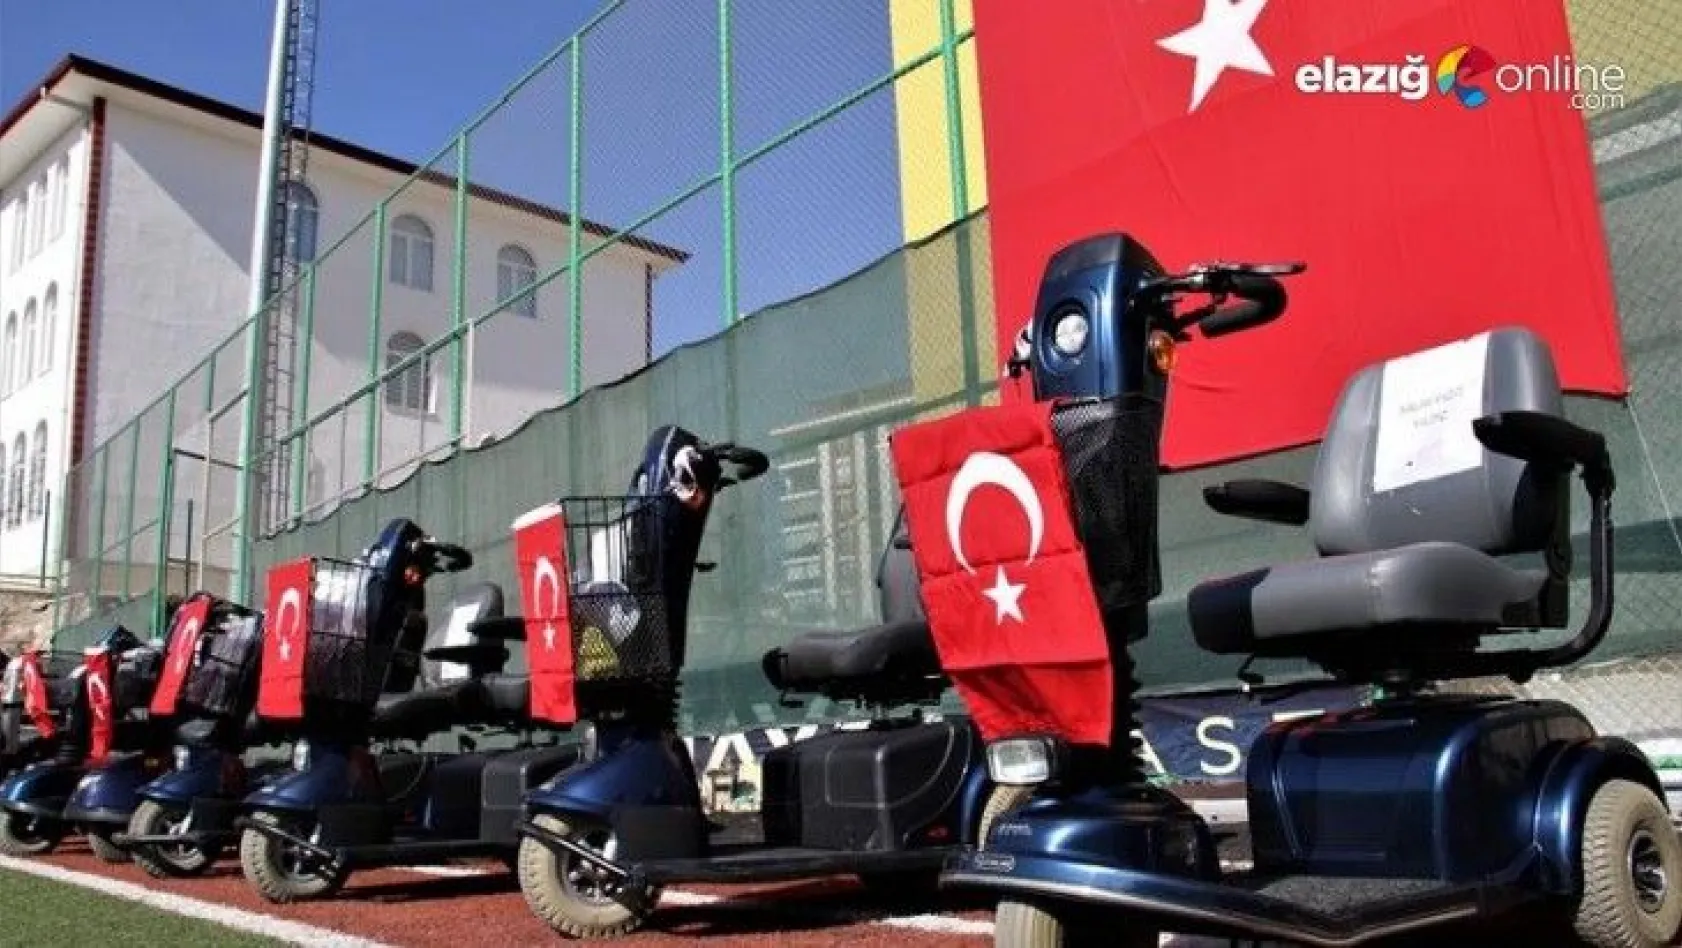 Elazığ'da 'Engelleri kaldırıyoruz' projesi ile 80 adet akülü araç verildi